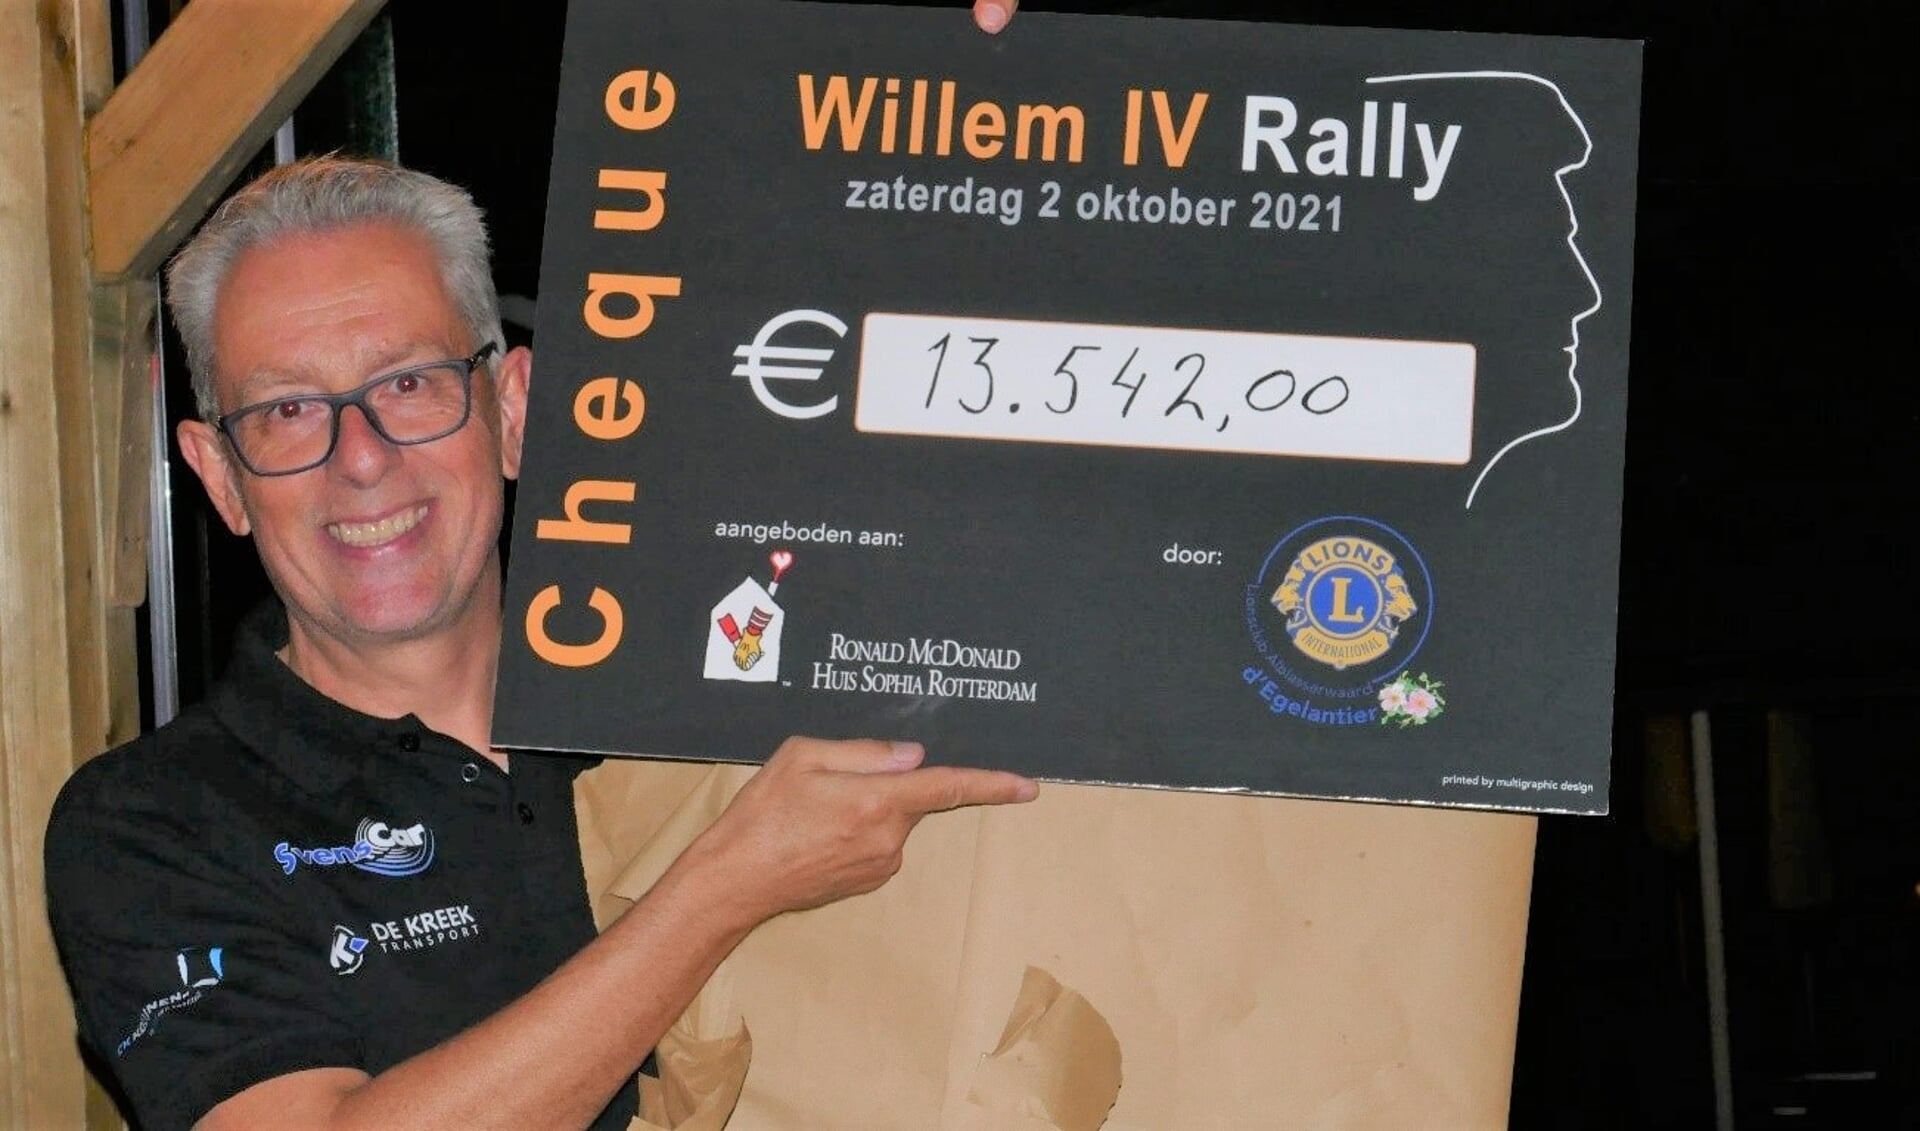 • De opbrengst van de Willem IV rally vorig jaar. 